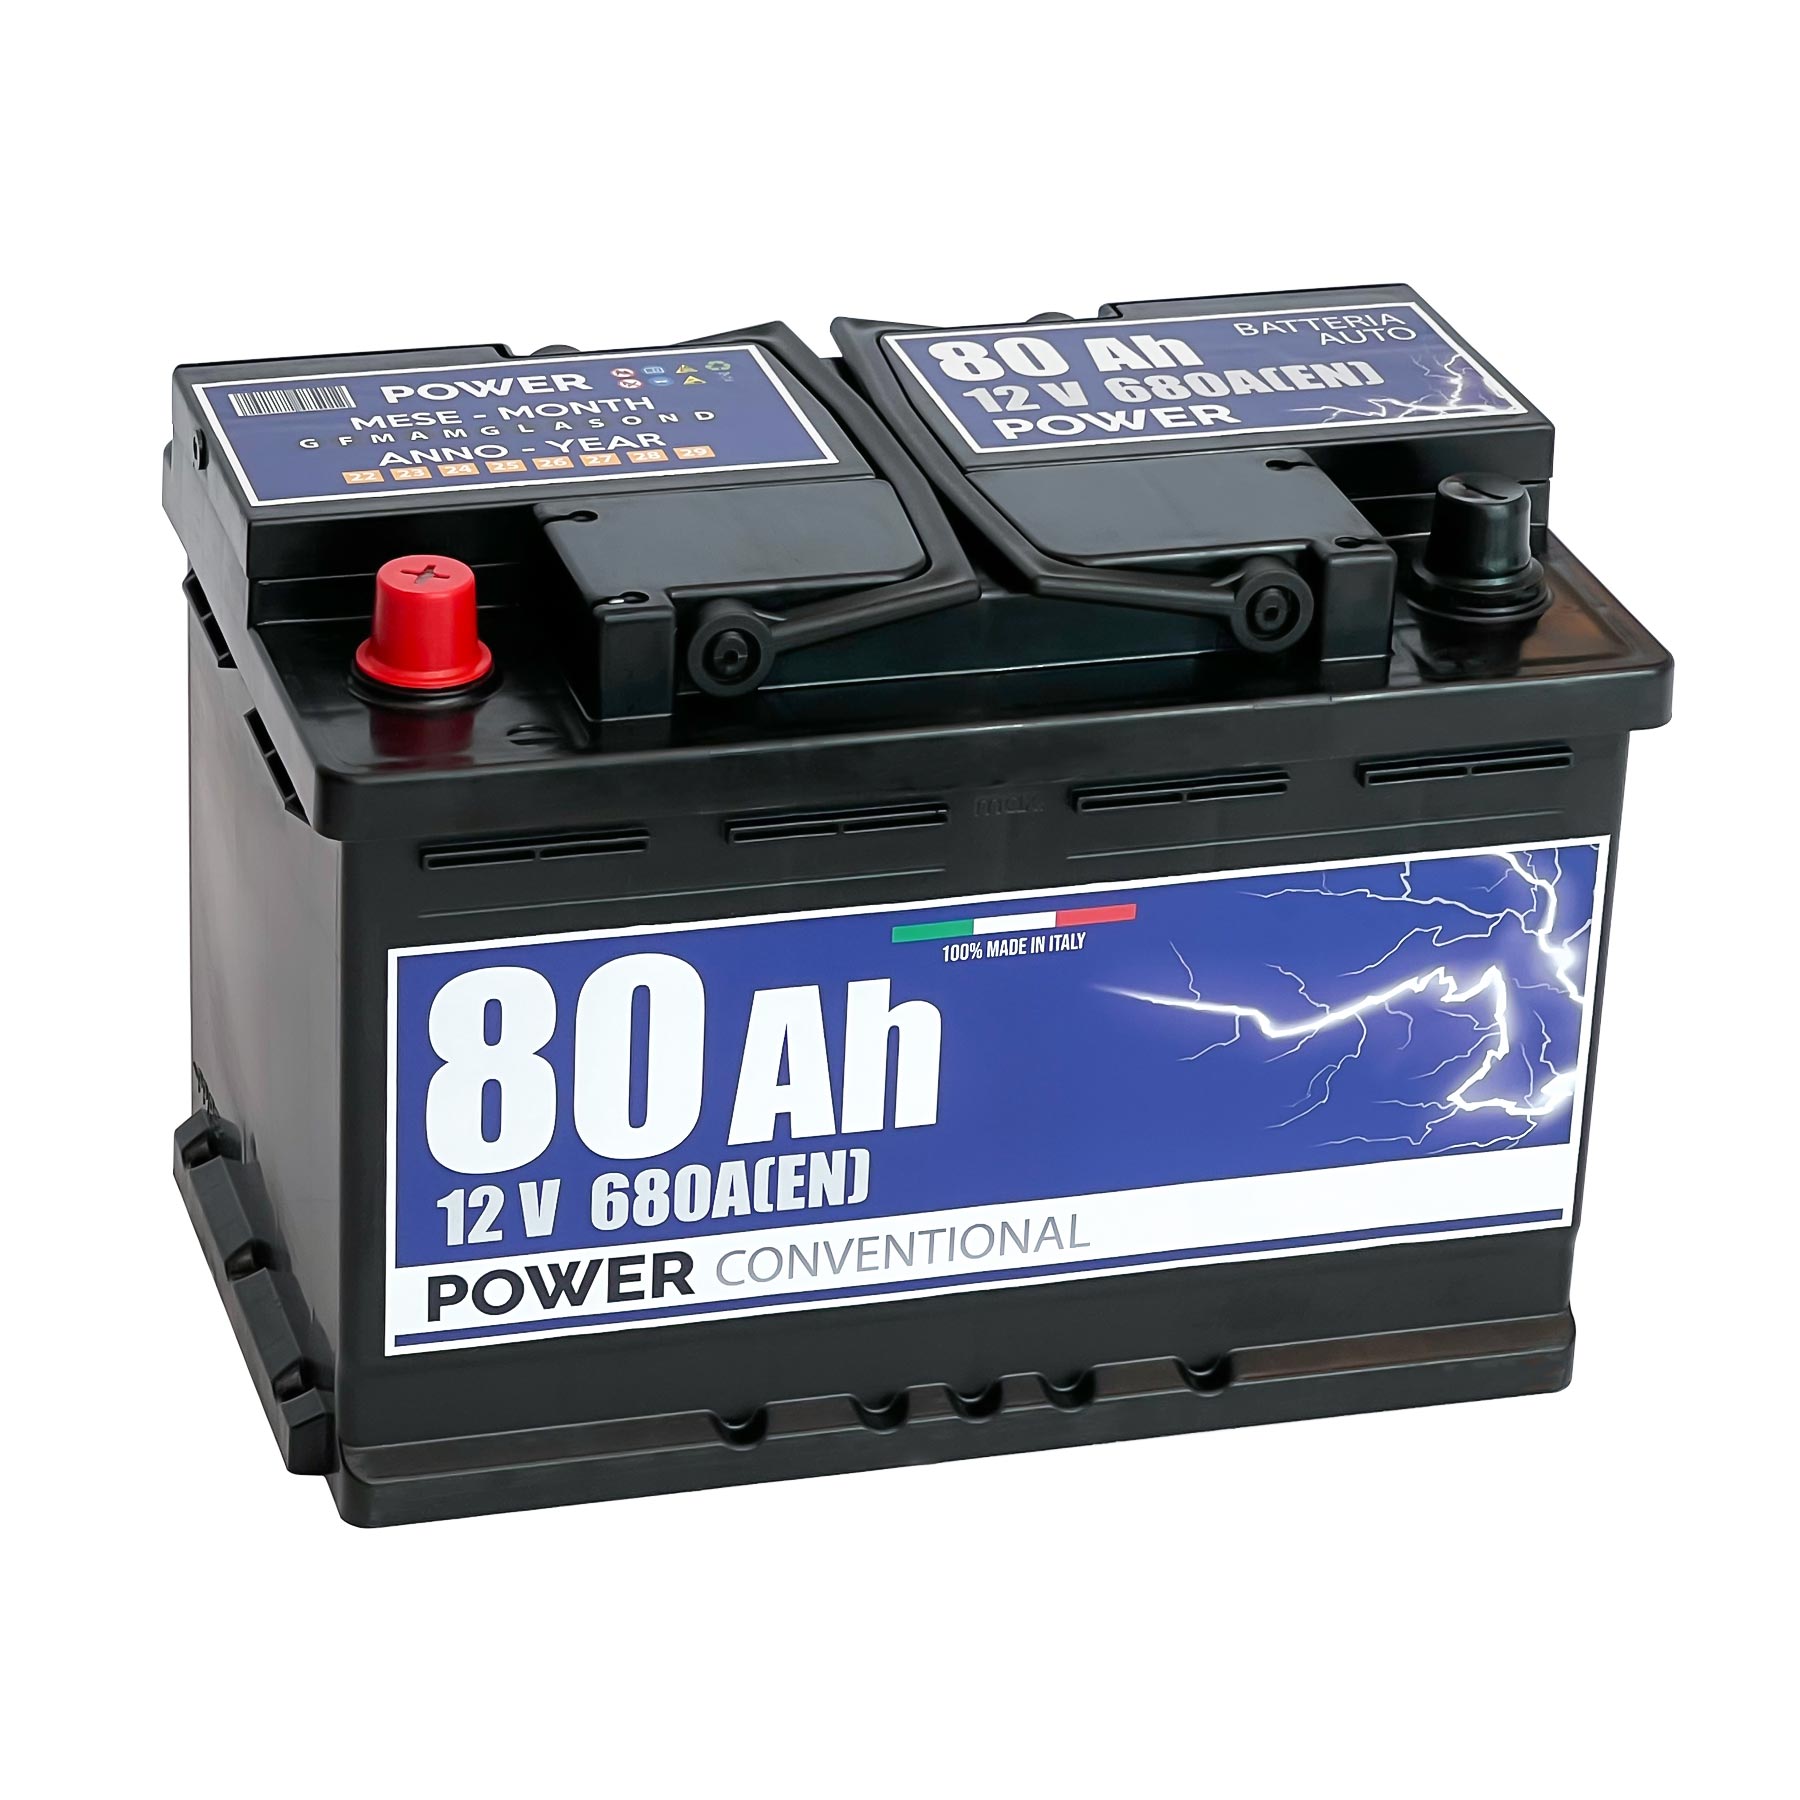 Batteria originale Power Conventional PB801, dimensioni 278 x 175 x 190, polo positivo a sinistra, 12 volt, 80 amperora, 680 ampere. Batteria per auto e veicoli leggeri.